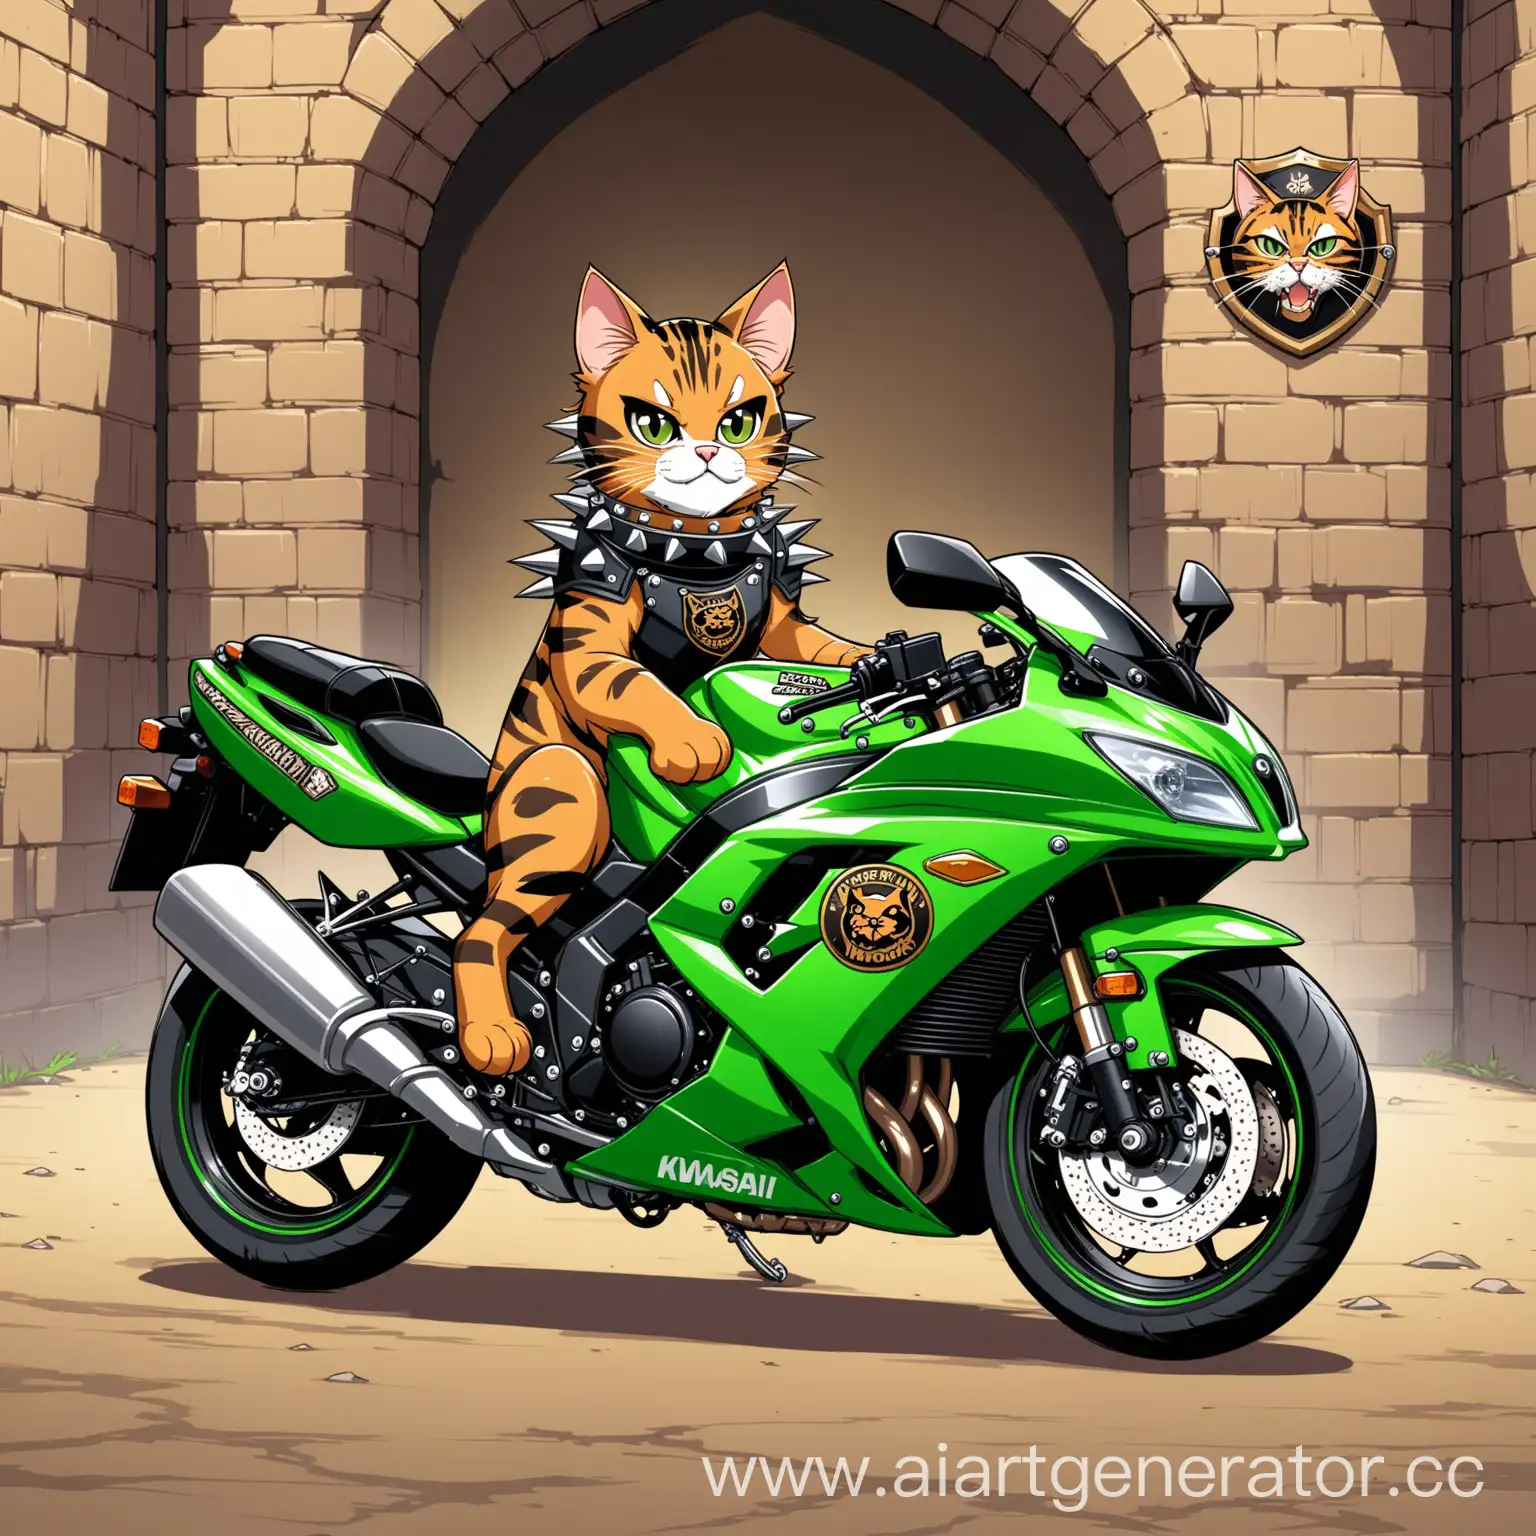 Bengal-Dungeon-Cat-on-Kawasaki-Ninja-Spiked-Collar-Motorcycle-Emblem